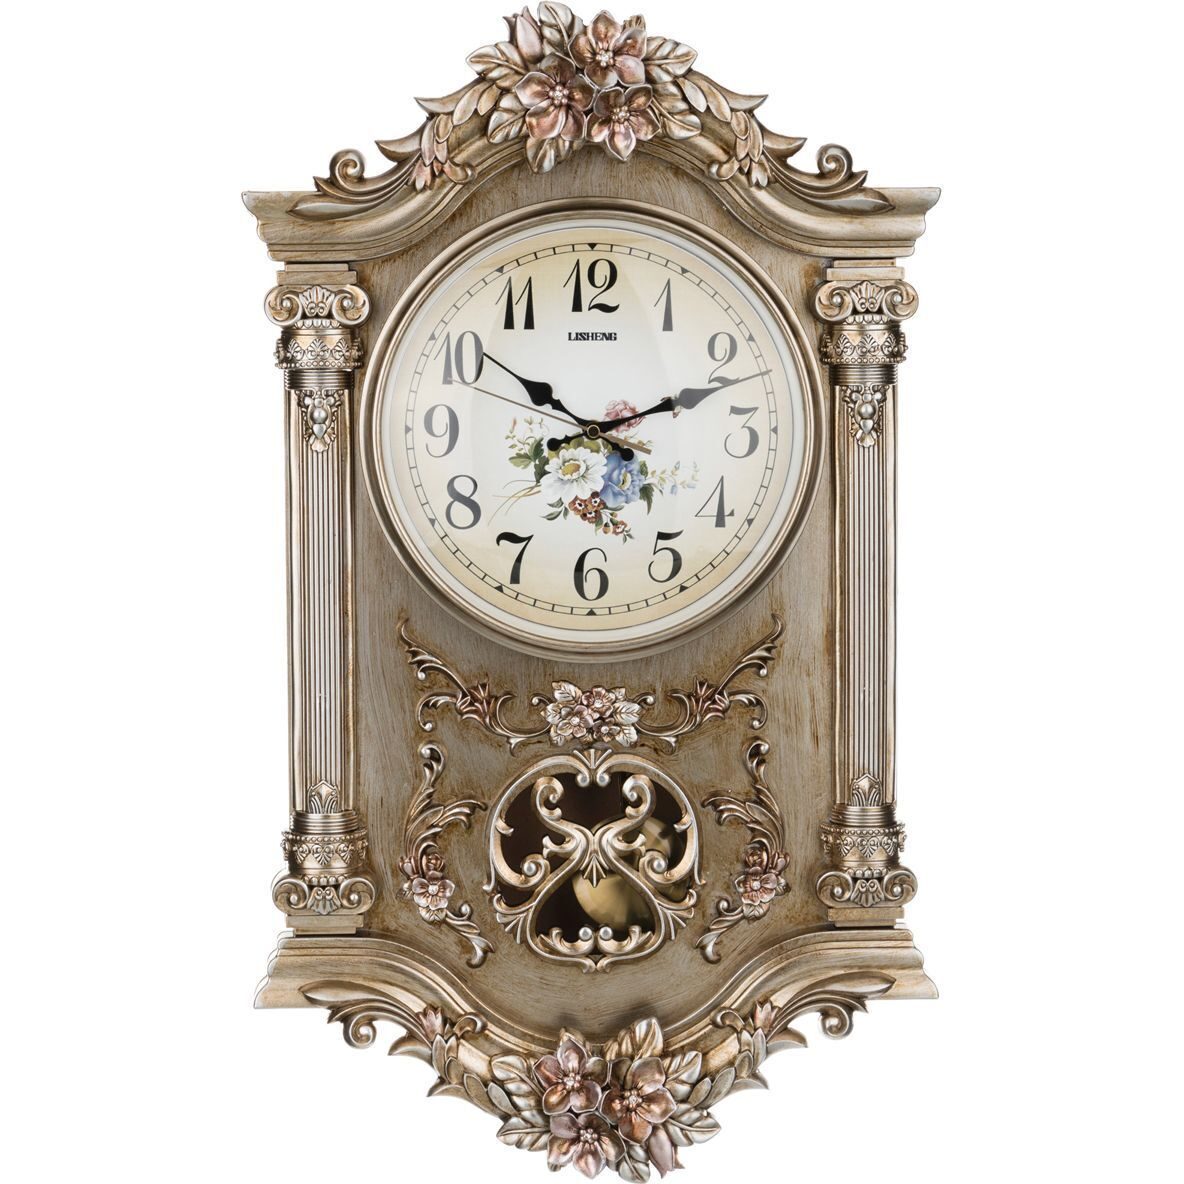 Модели часов настенных. Часы Lefard 504-385. Часы с маятником настенные.